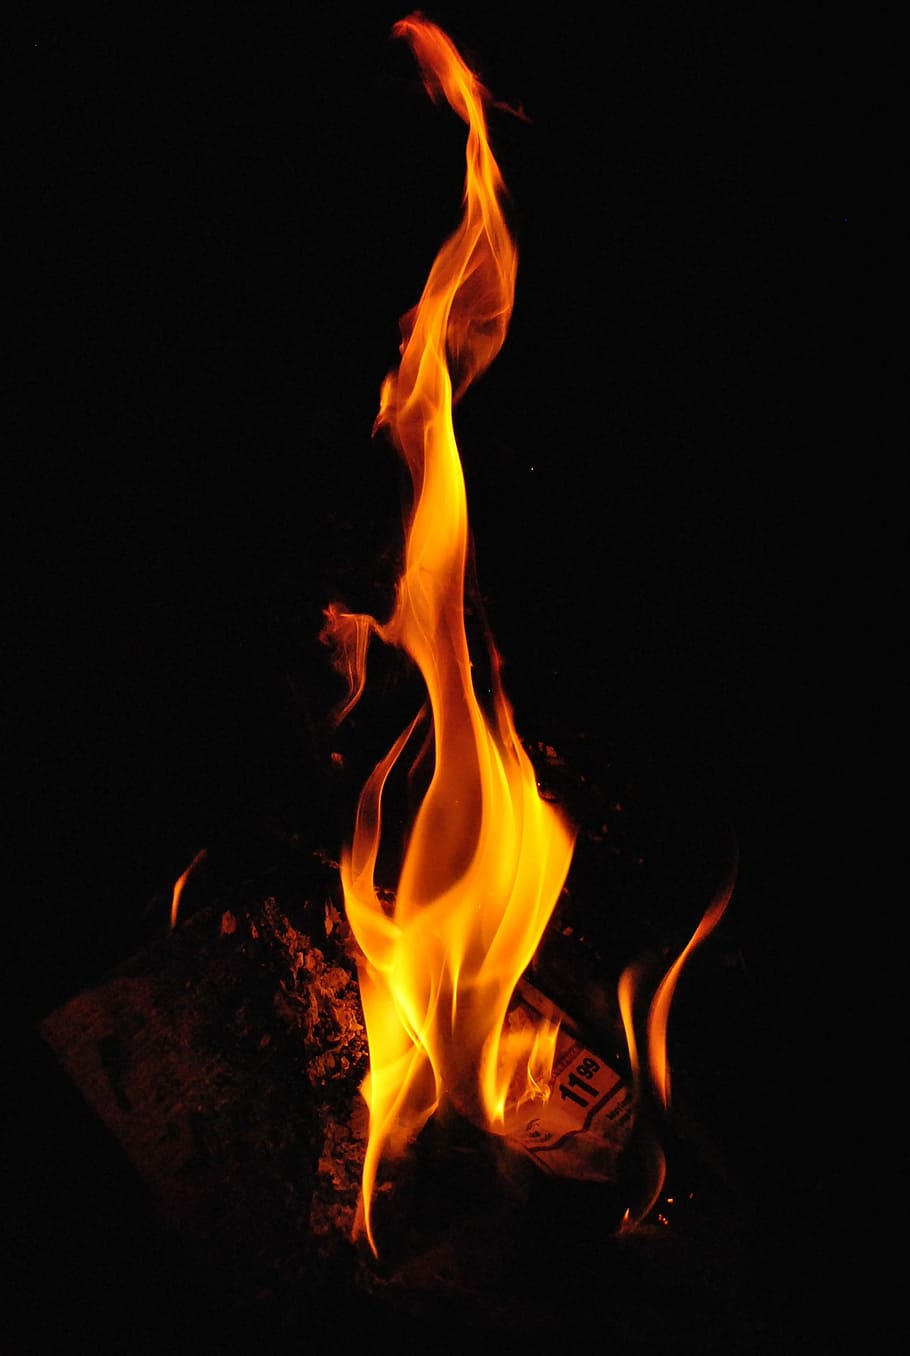 fotografia de lareira, lareira, fotografia, fogo, chamas, queima, calor, quente, amarelo, laranja